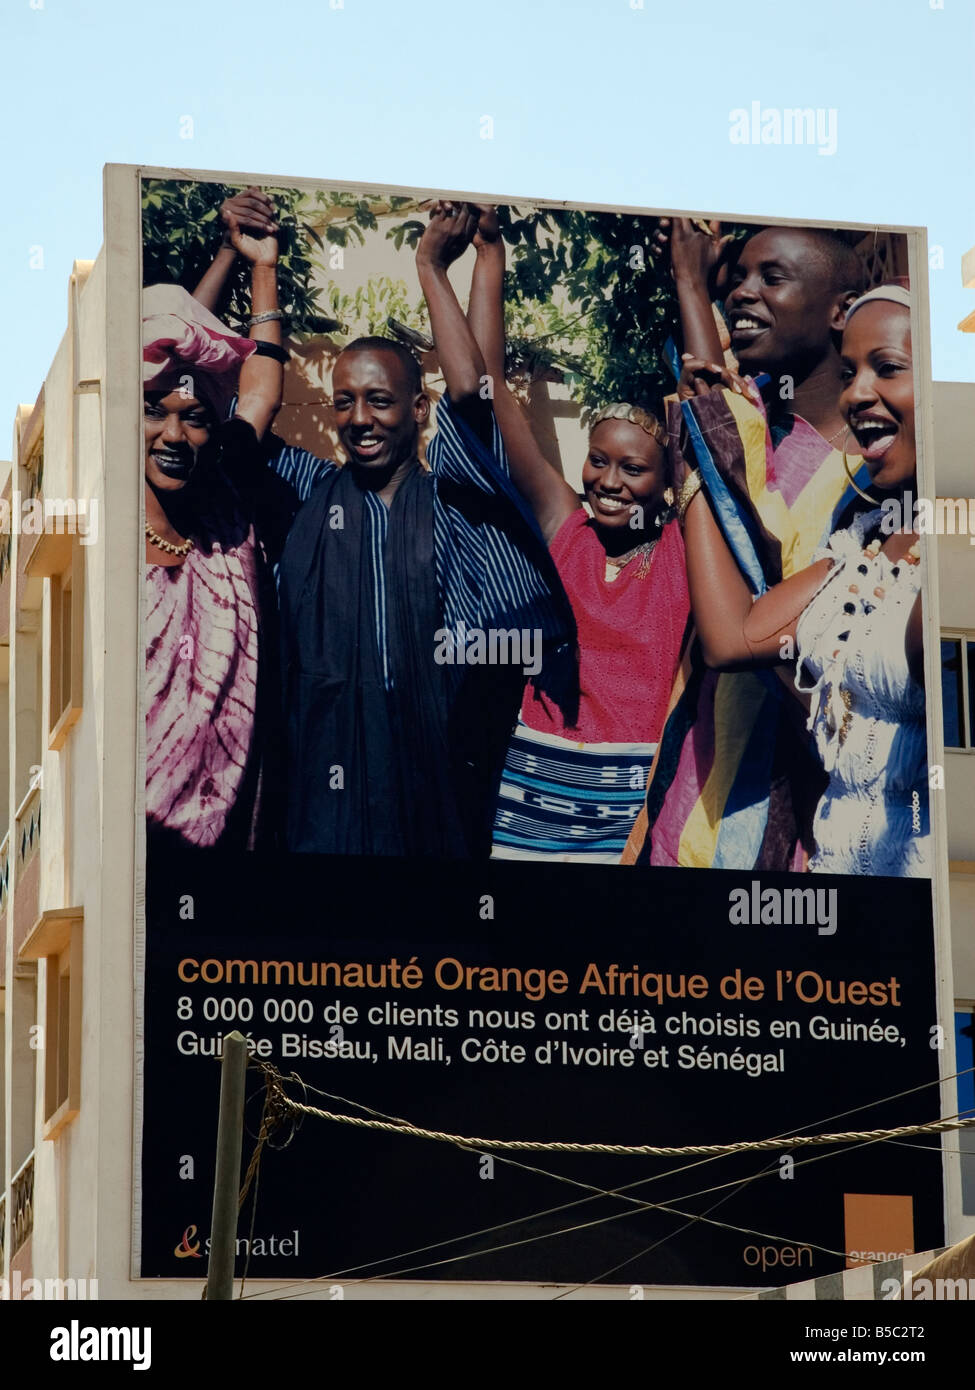 télécommande orange noire - Page 2 - Communauté Orange